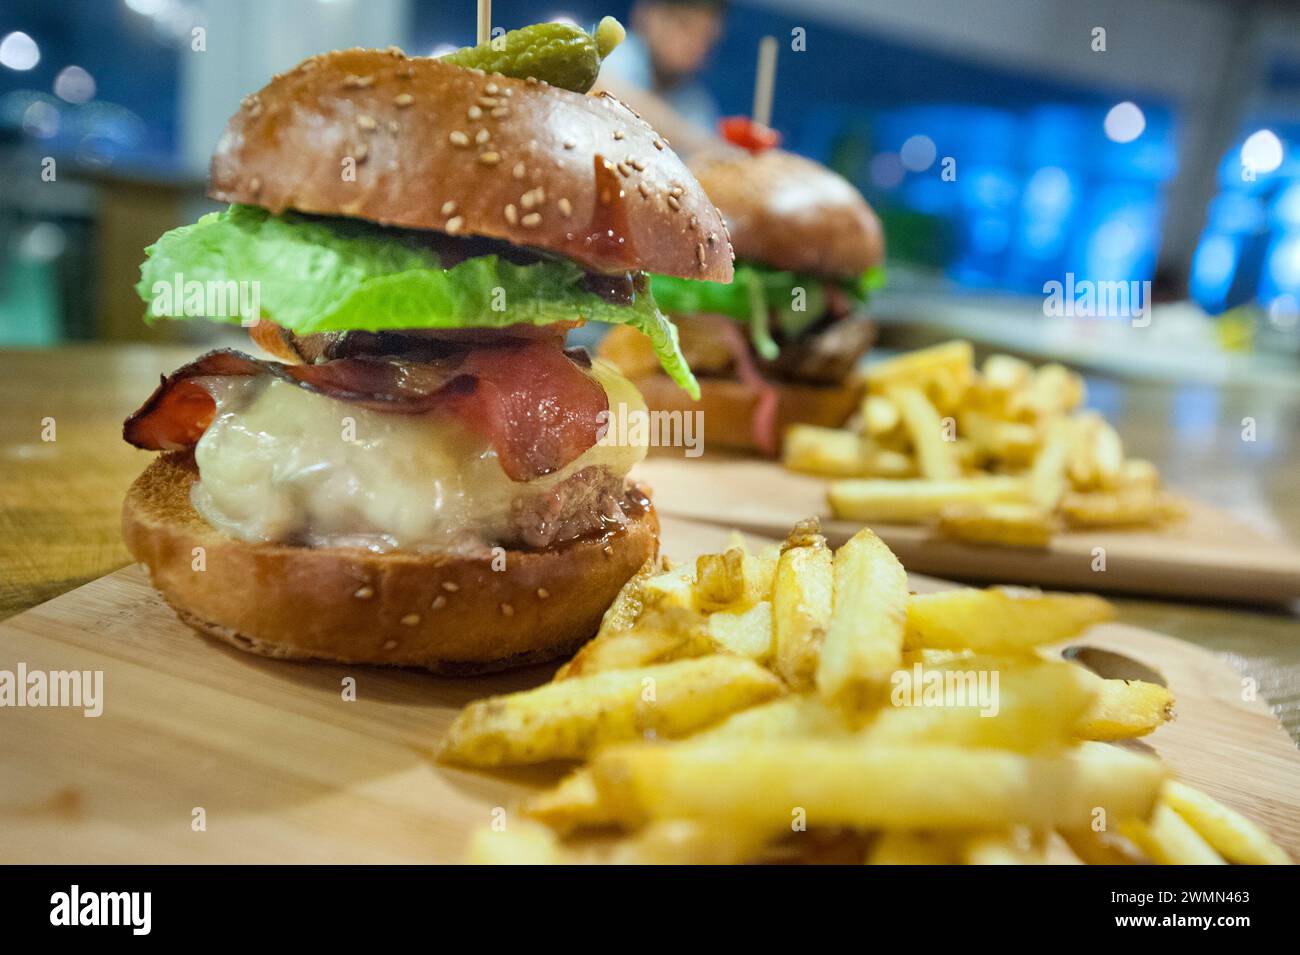 Cheeseburger au bacon et frites Banque D'Images